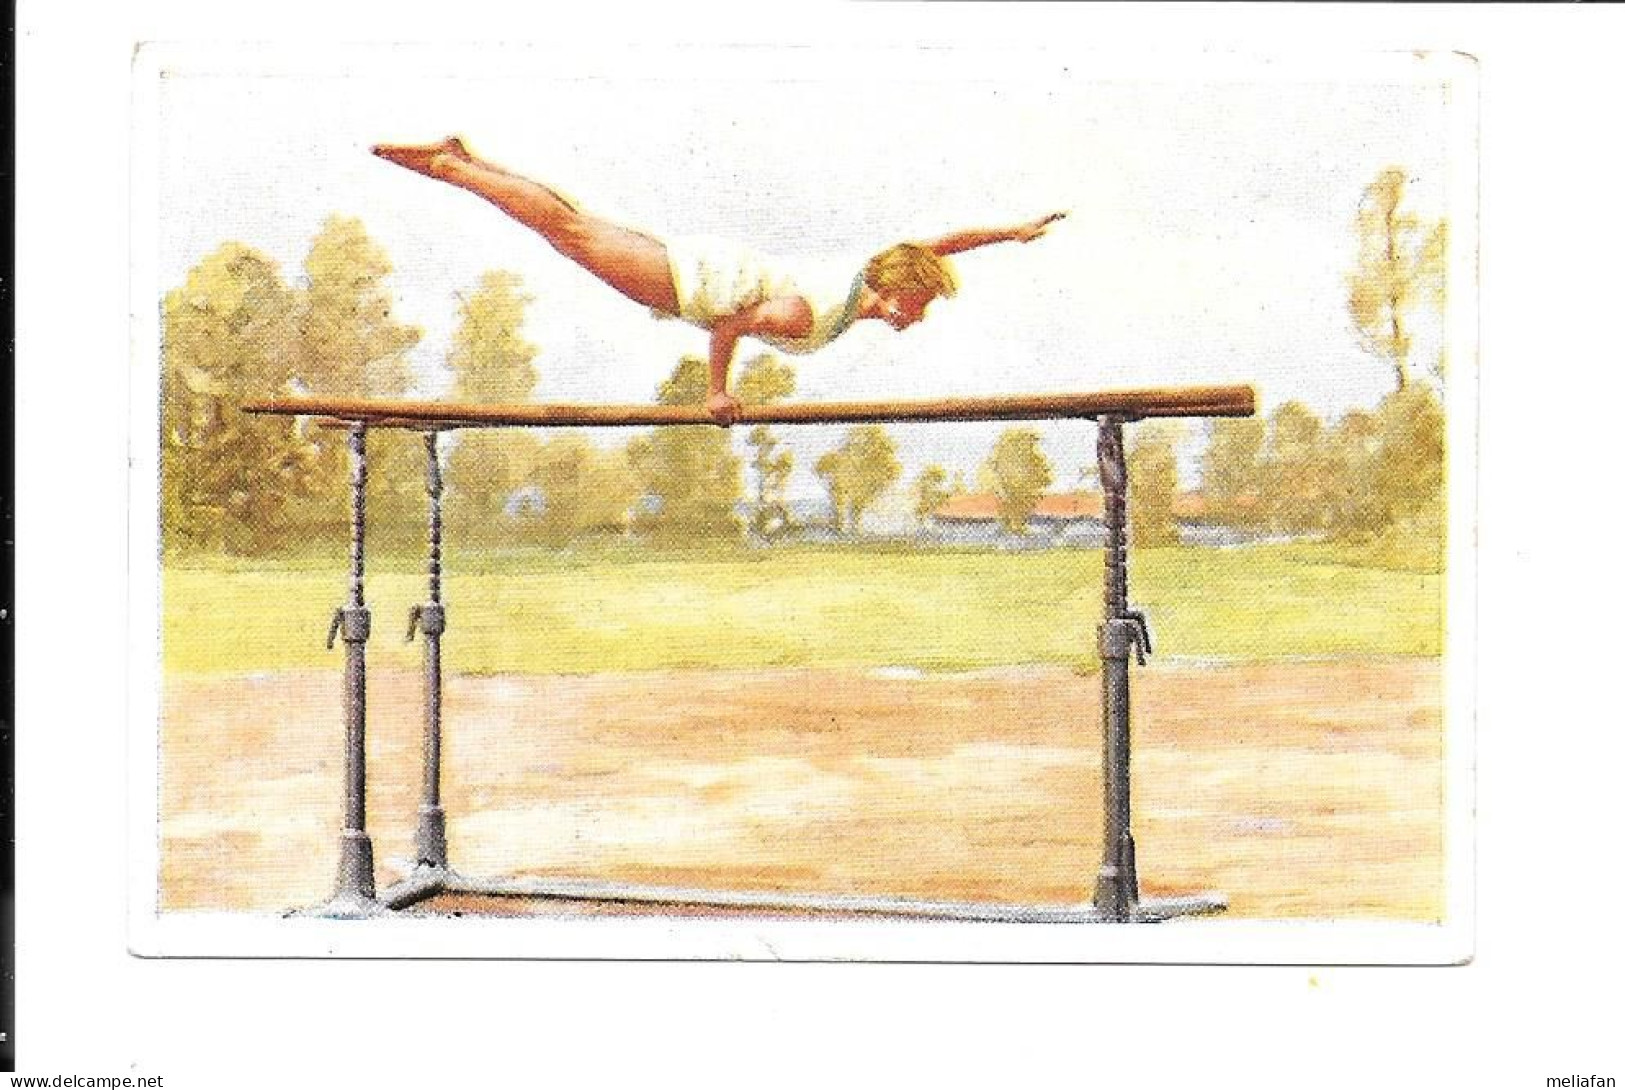 CK27 - IMAGE CIGARETTES SANELLA - GYMNASTIQUE - BARRES PARALLELES - Gymnastiek